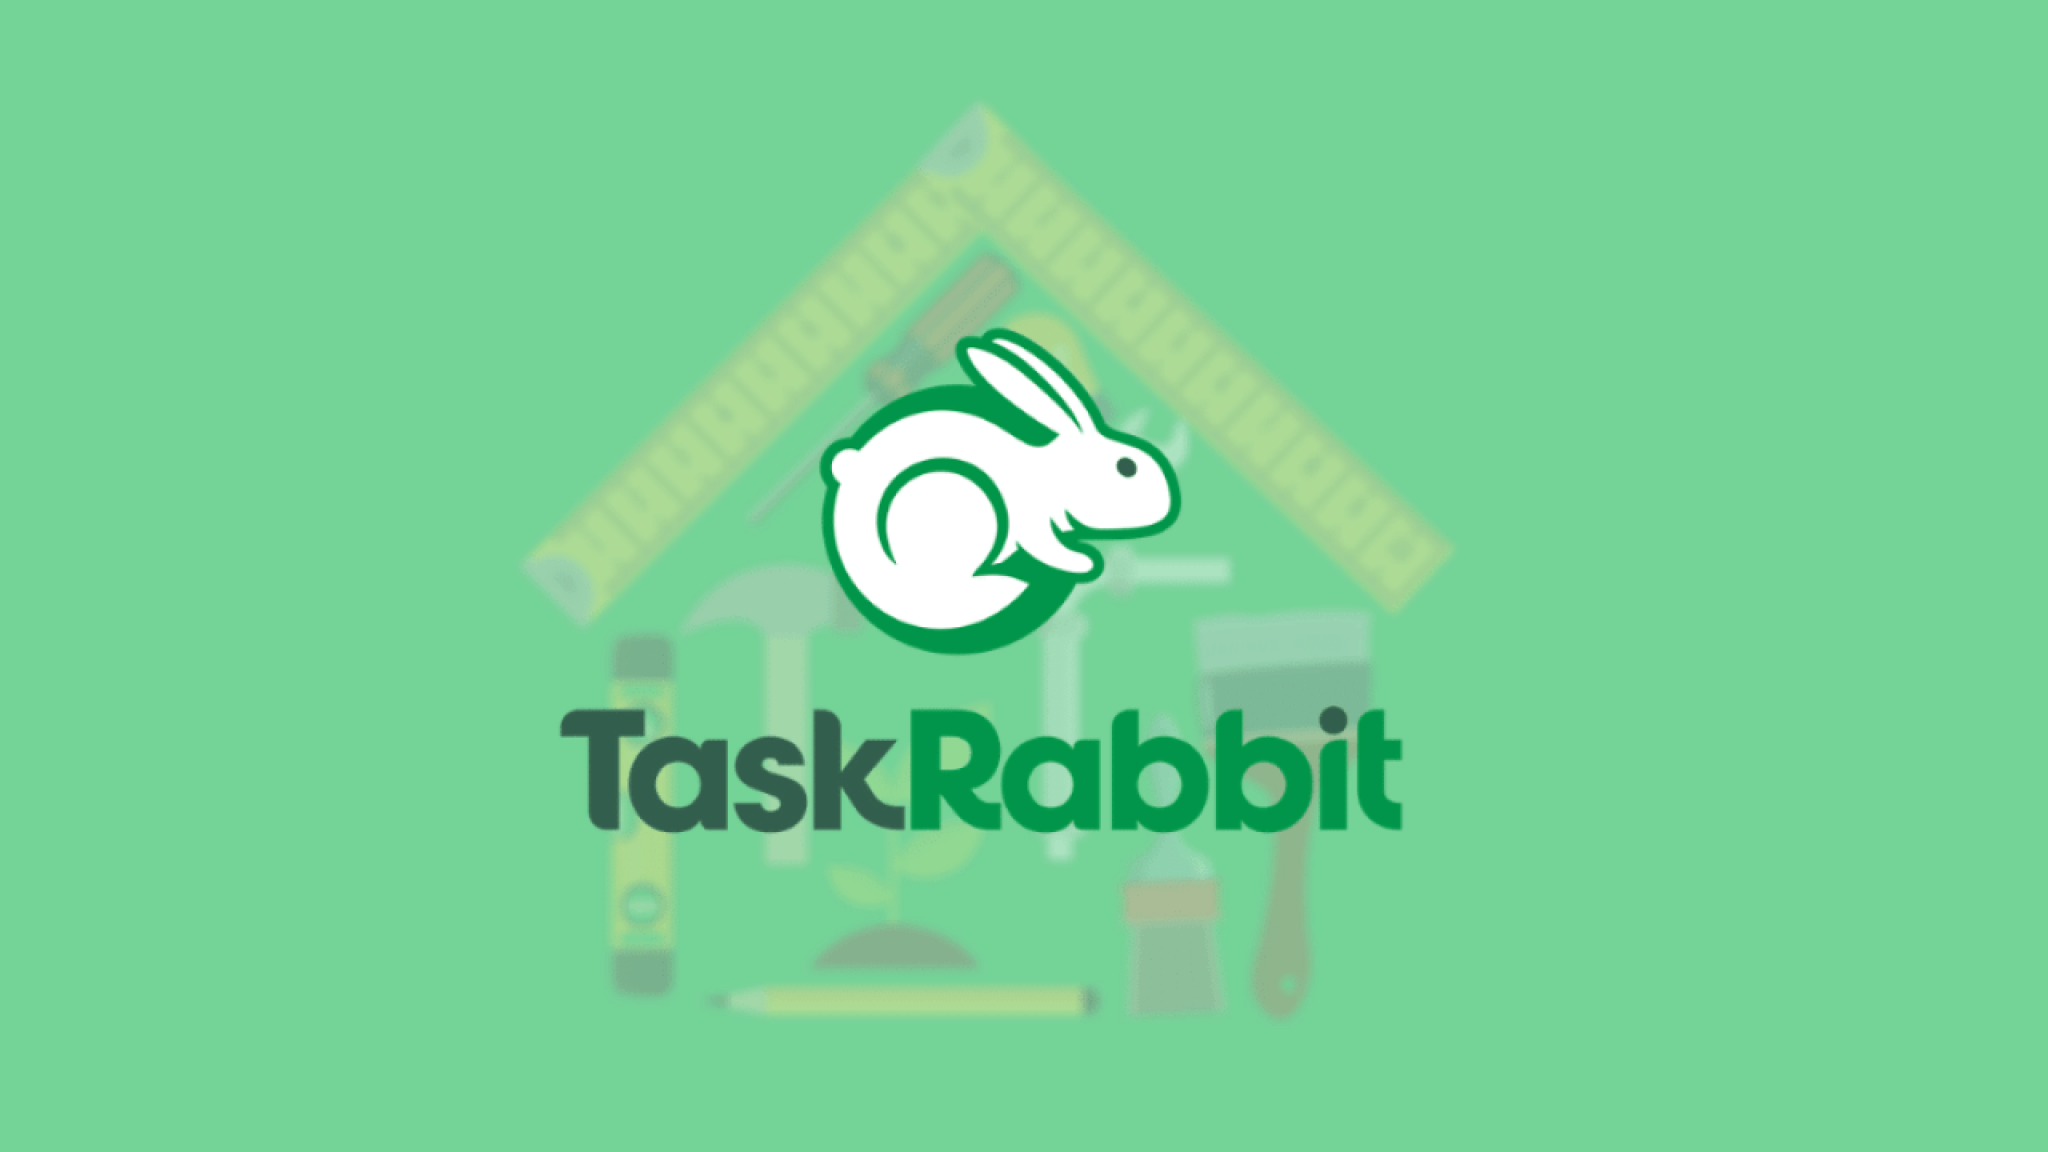 Taskrabbit Trustpilot